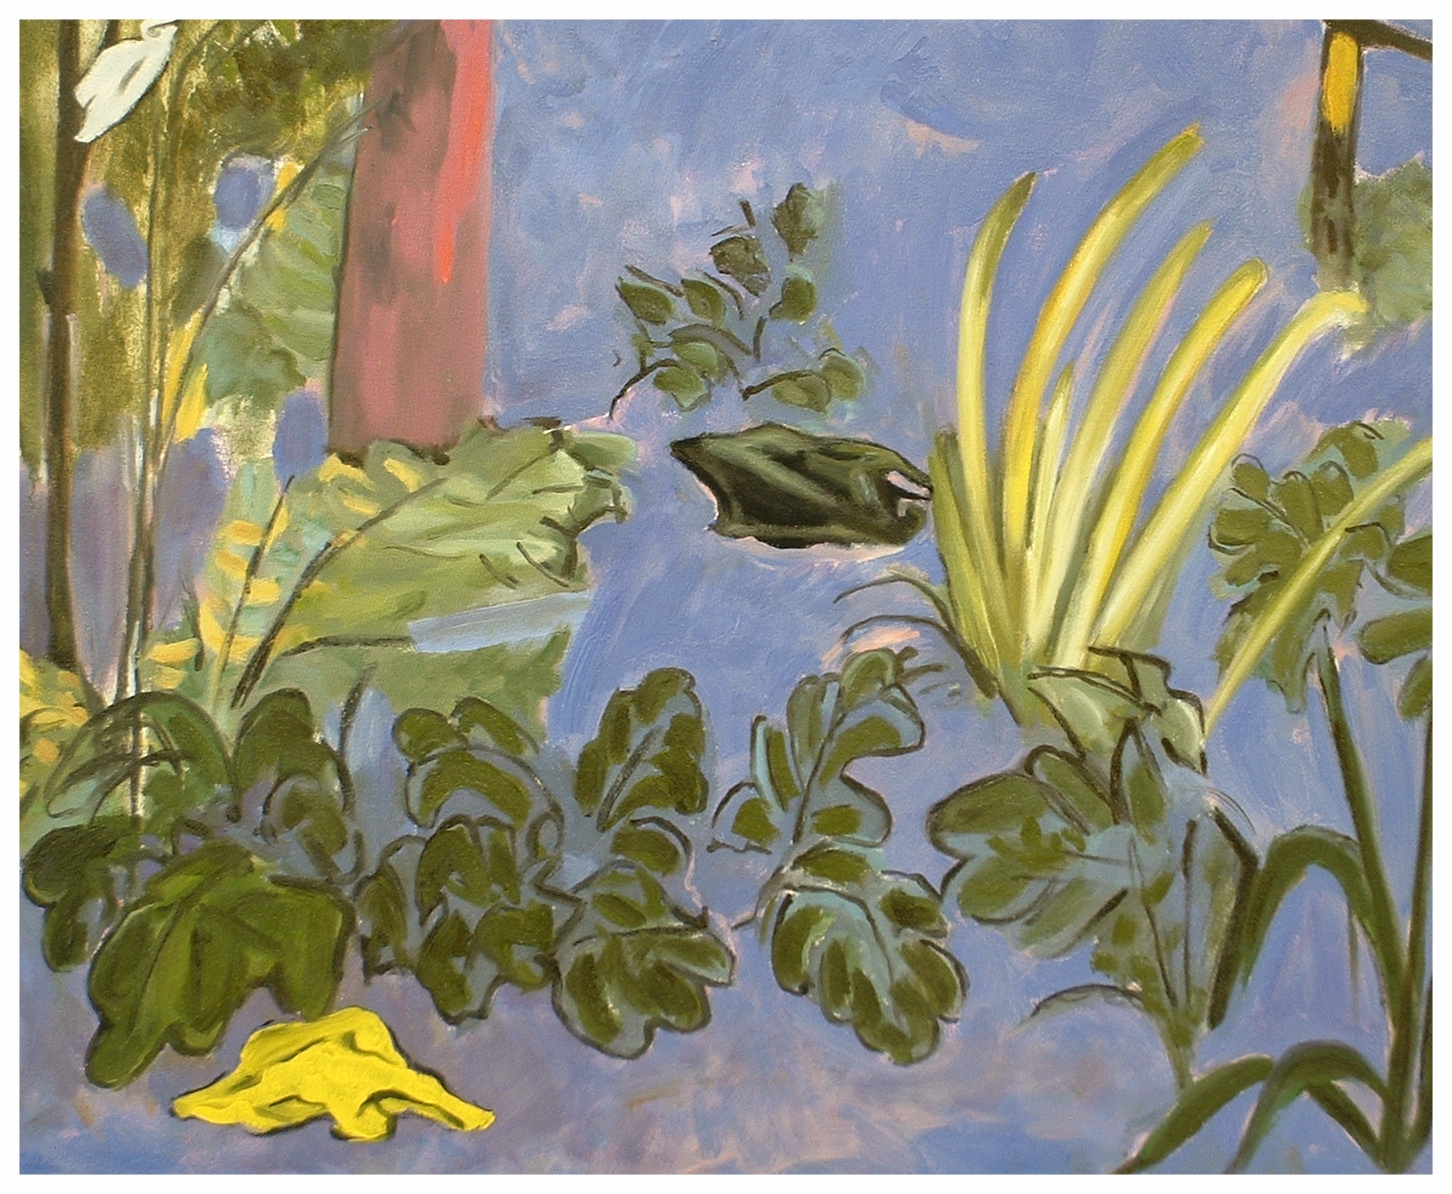 Matisse's Bags (detail)